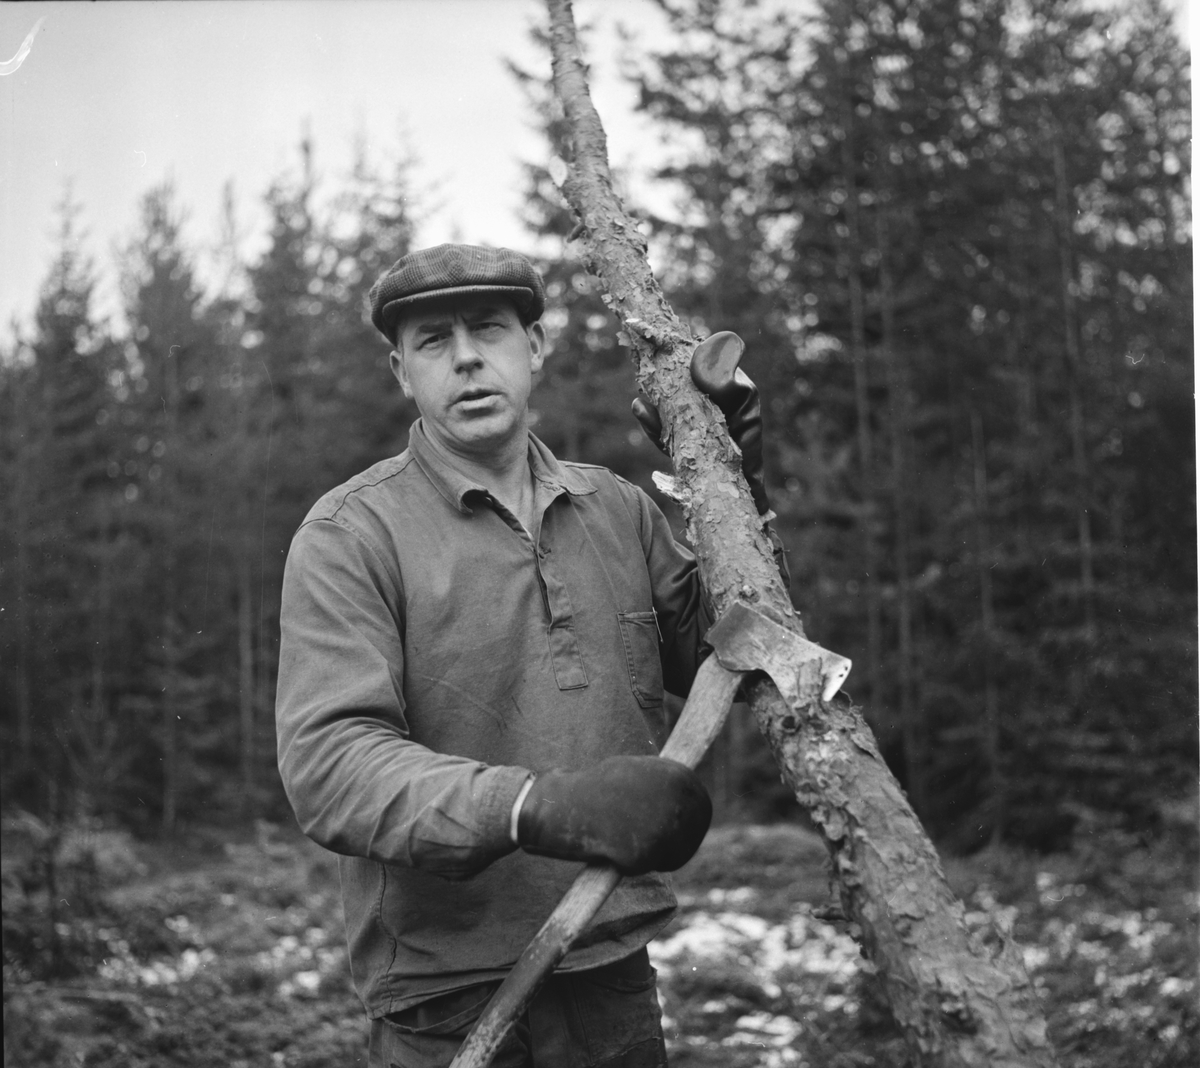 Söräng,
Erik Eriksson,
handikappad skogsarbetare,
20 nov 1966